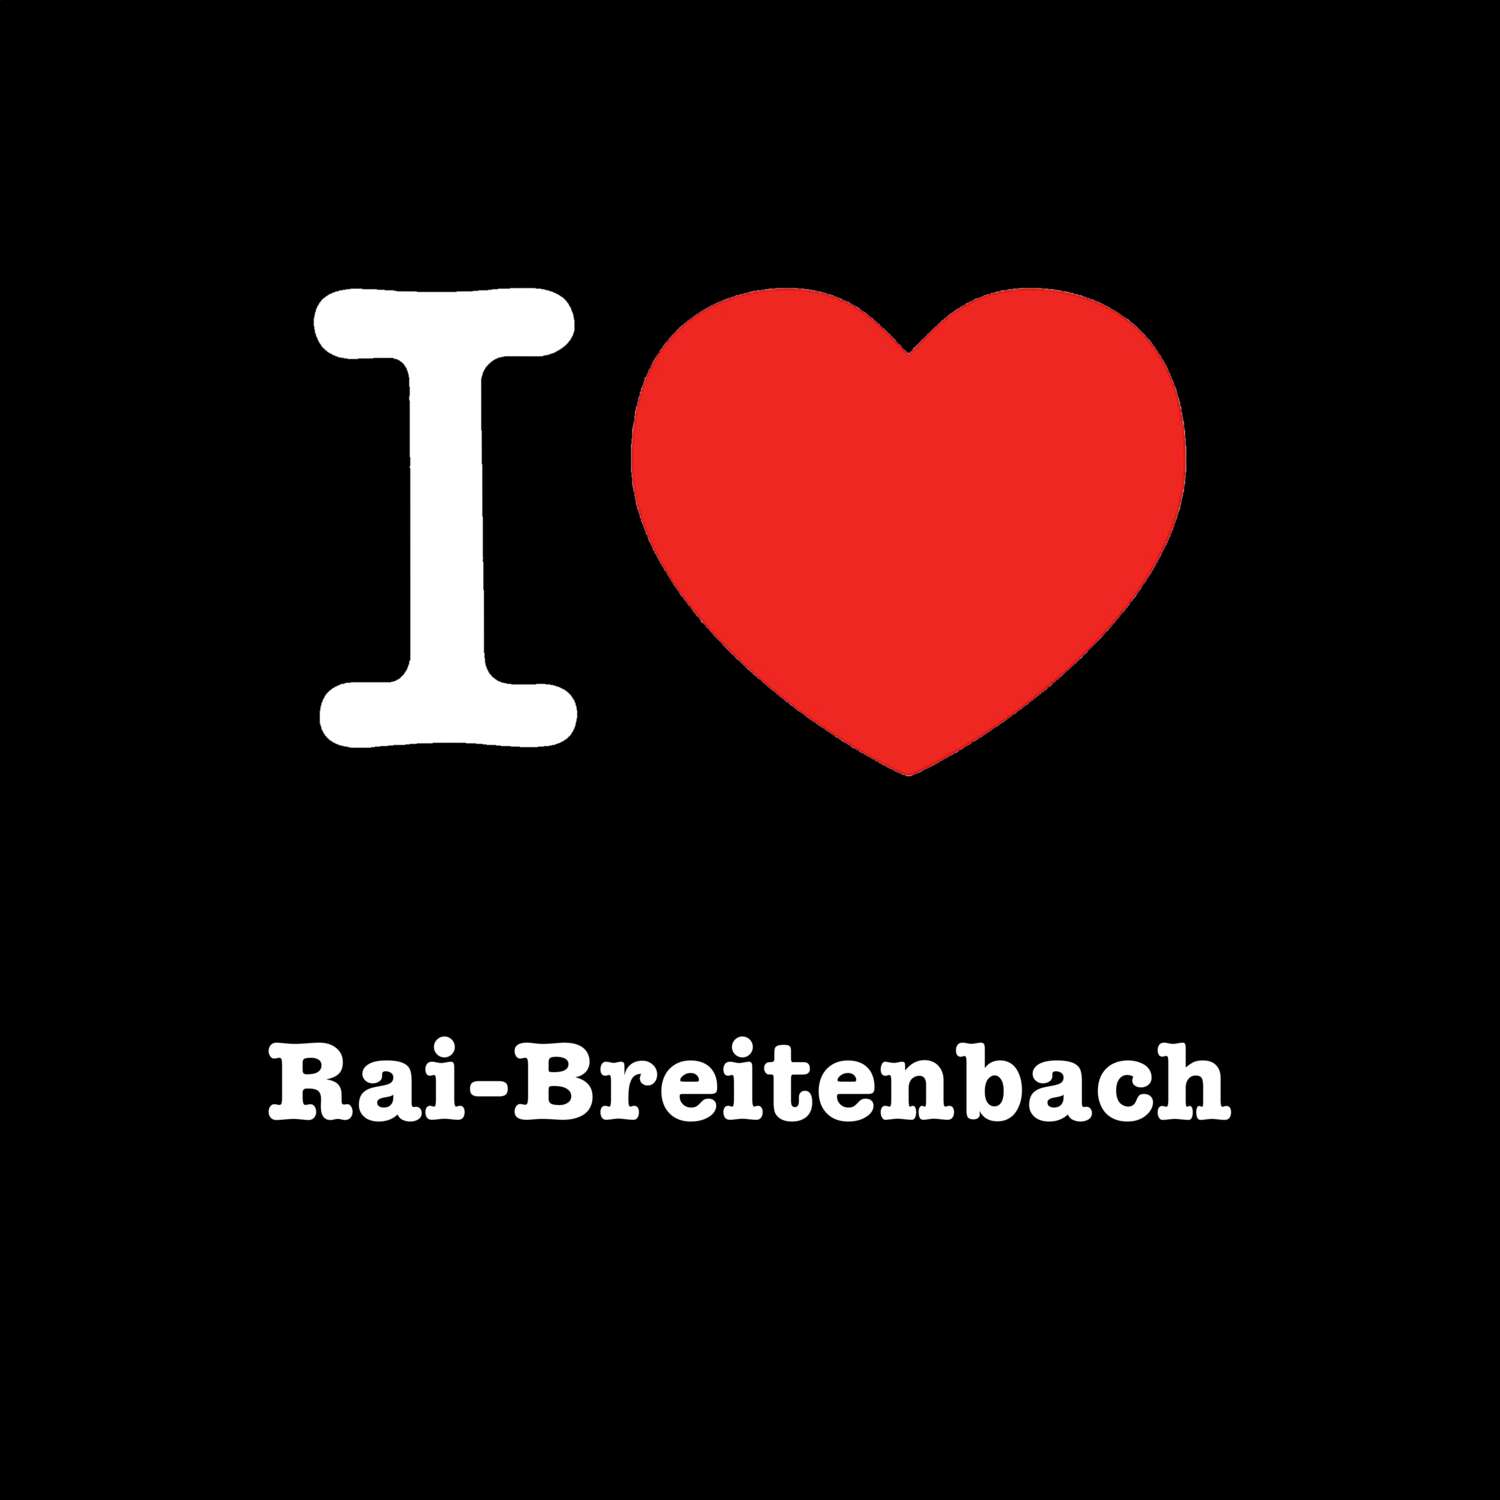 Rai-Breitenbach T-Shirt »I love«